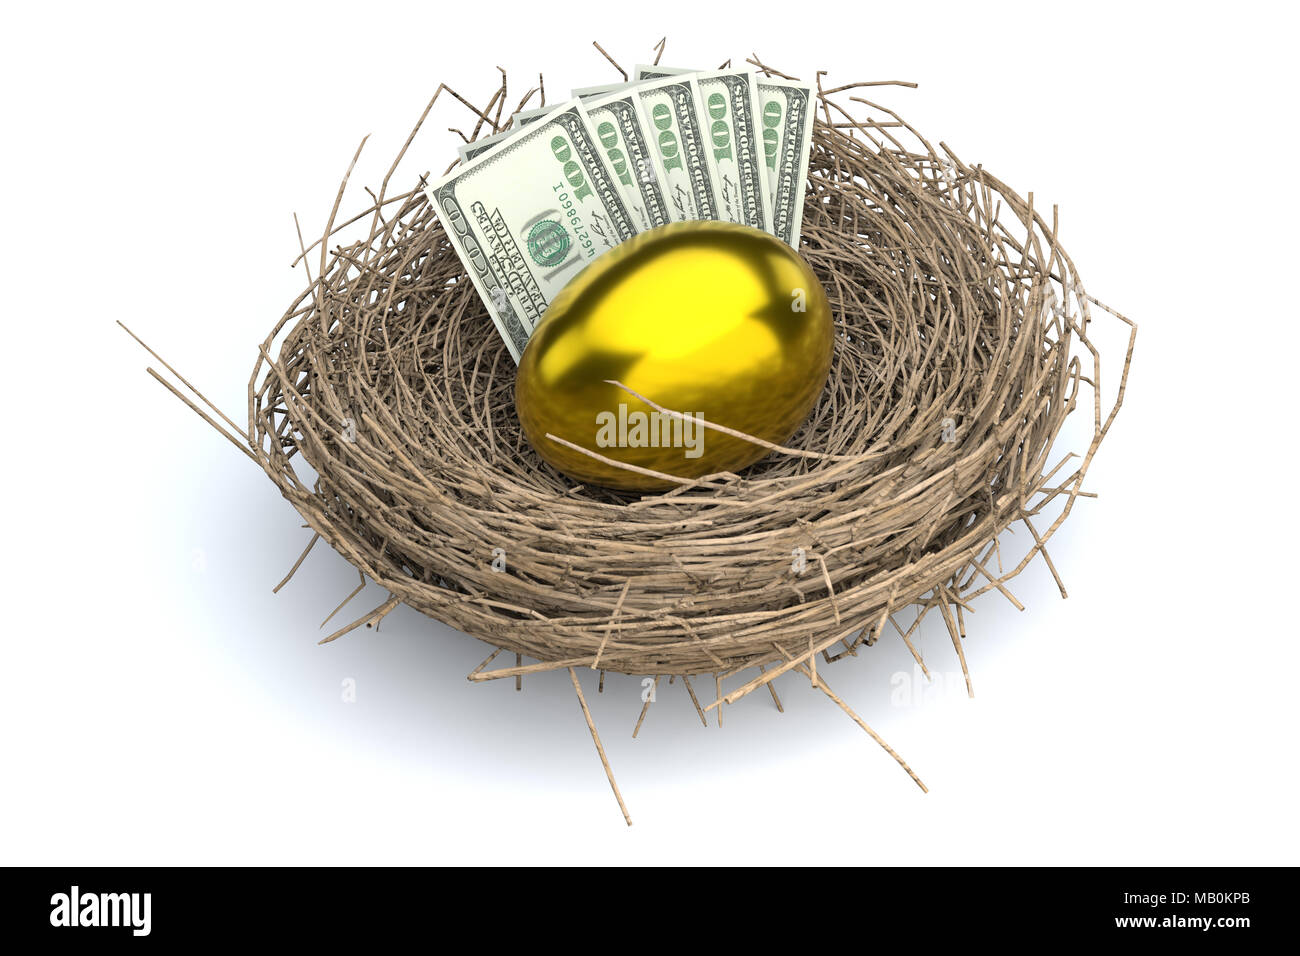 Nido di pensionamento uovo che illustra il concetto di risparmio, 401K, conti previdenza, o fondi pensione. Foto Stock